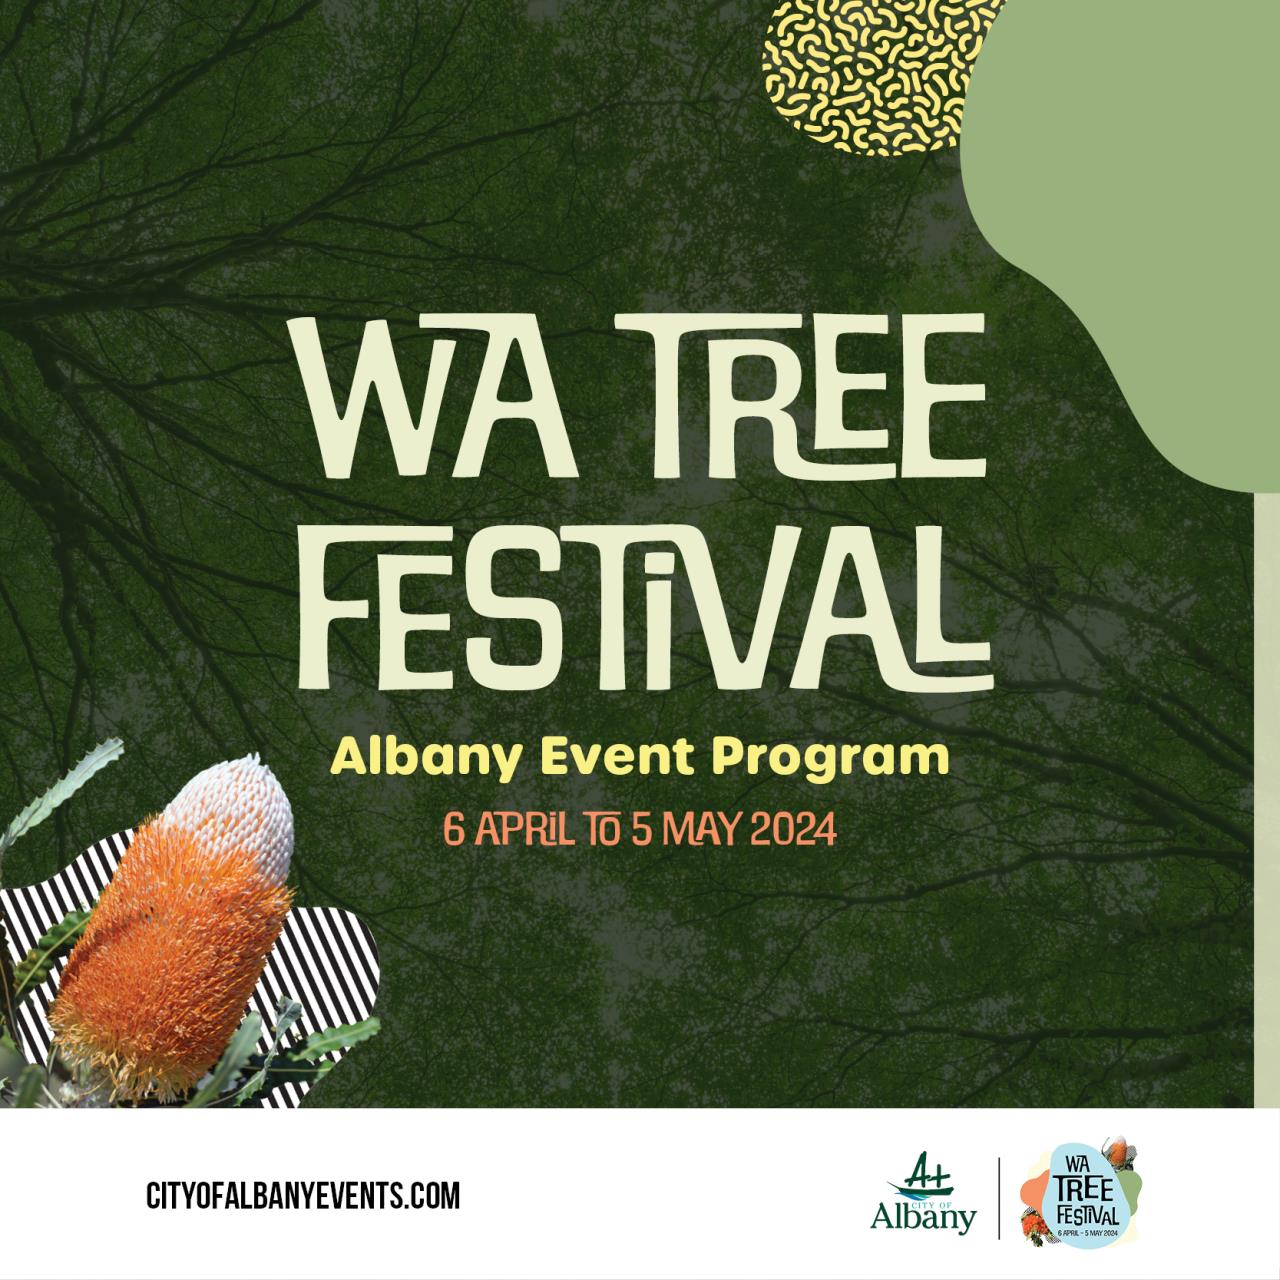 WA Tree Festival grows in 2024